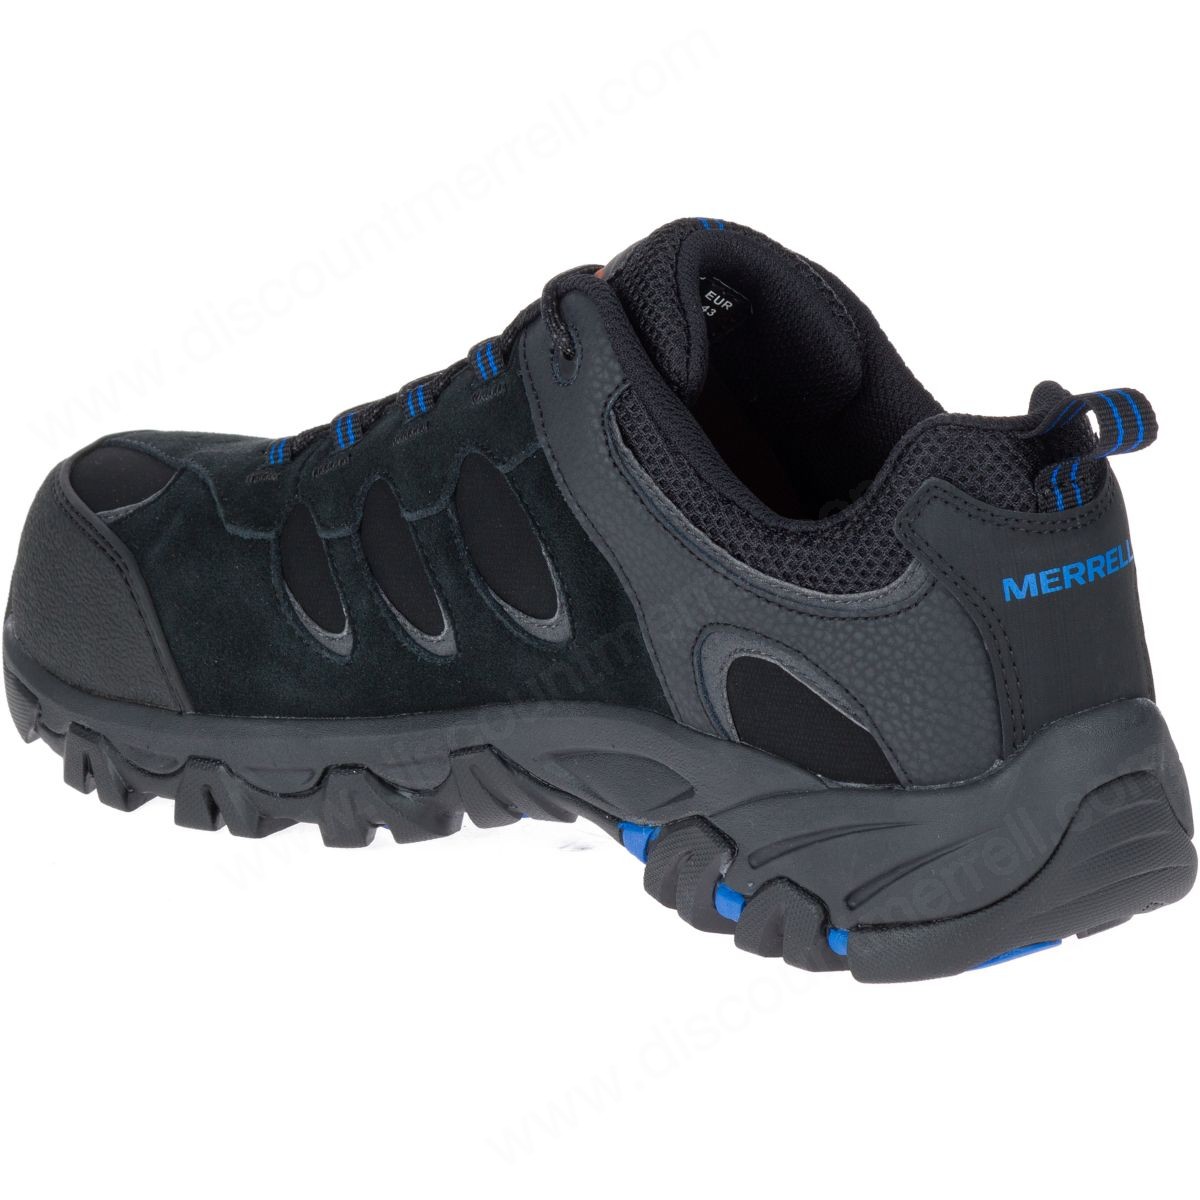 Merrell Man's Ridgepass Bolt Comp Toe Work Sneaker Wide Width Black - -6